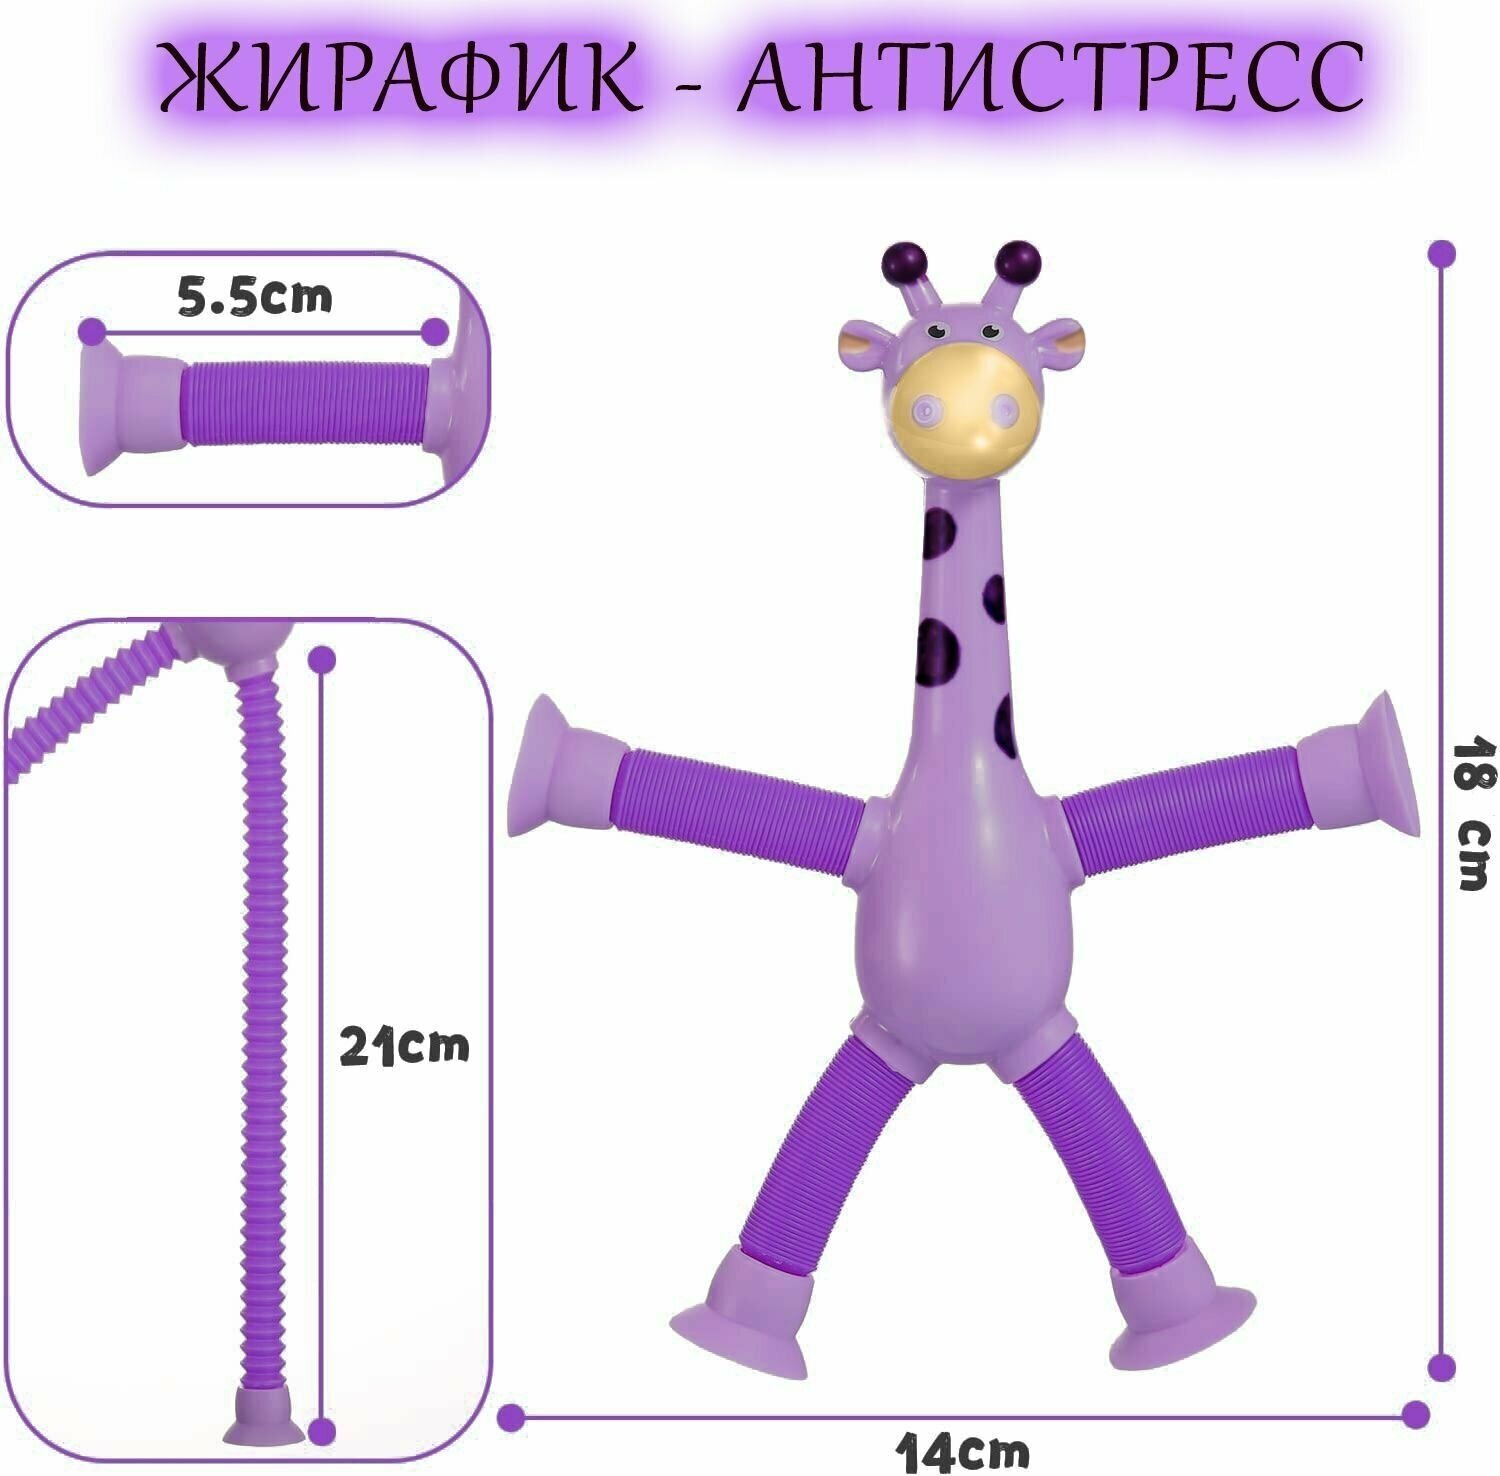 Игрушка на присосках фиолетовый Жирафик из поп трубок для снятия стресса у детей и взрослых, подарок на день рождения.